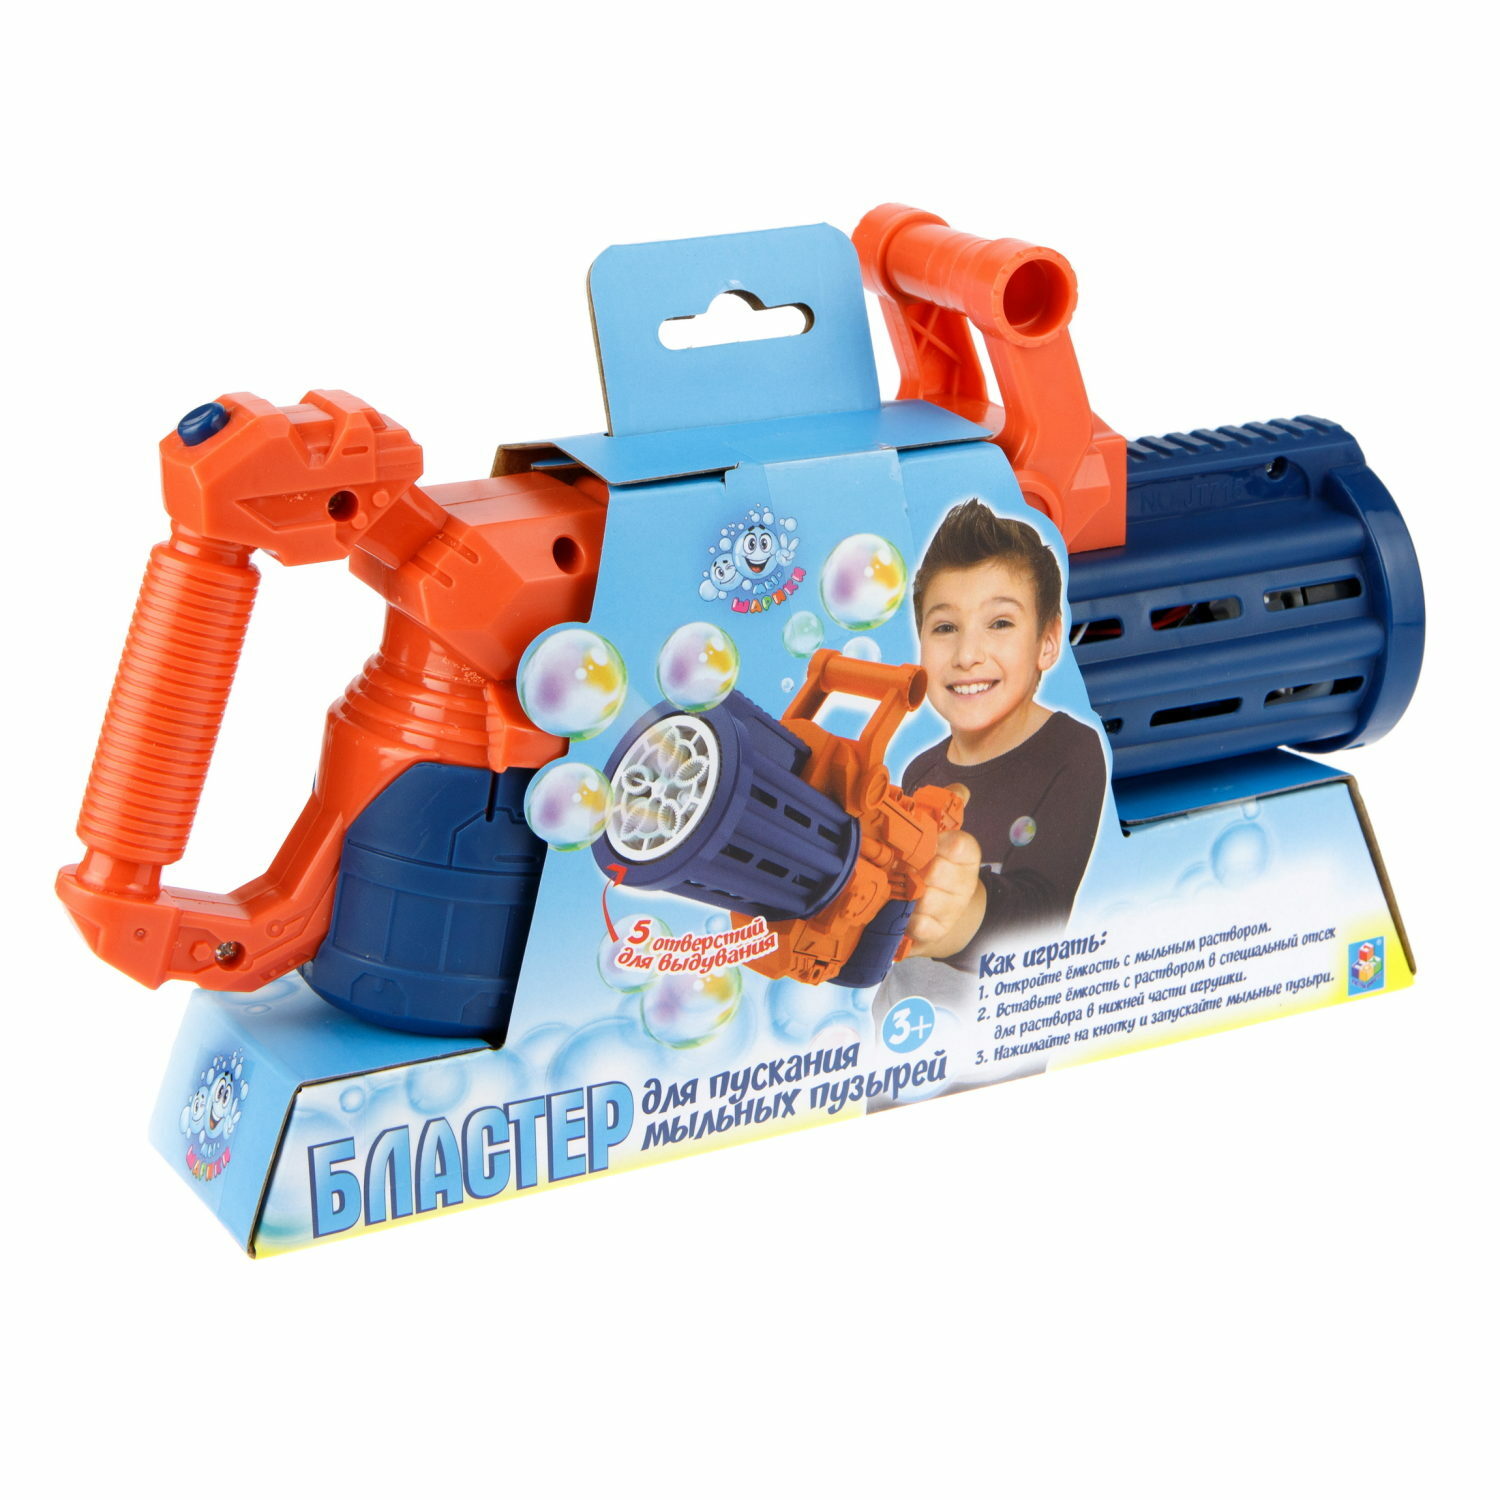 Мыльные пузыри пистолет Мы-шарики 1YOY игрушки для мальчика генератор миниган базука бластер - фото 4